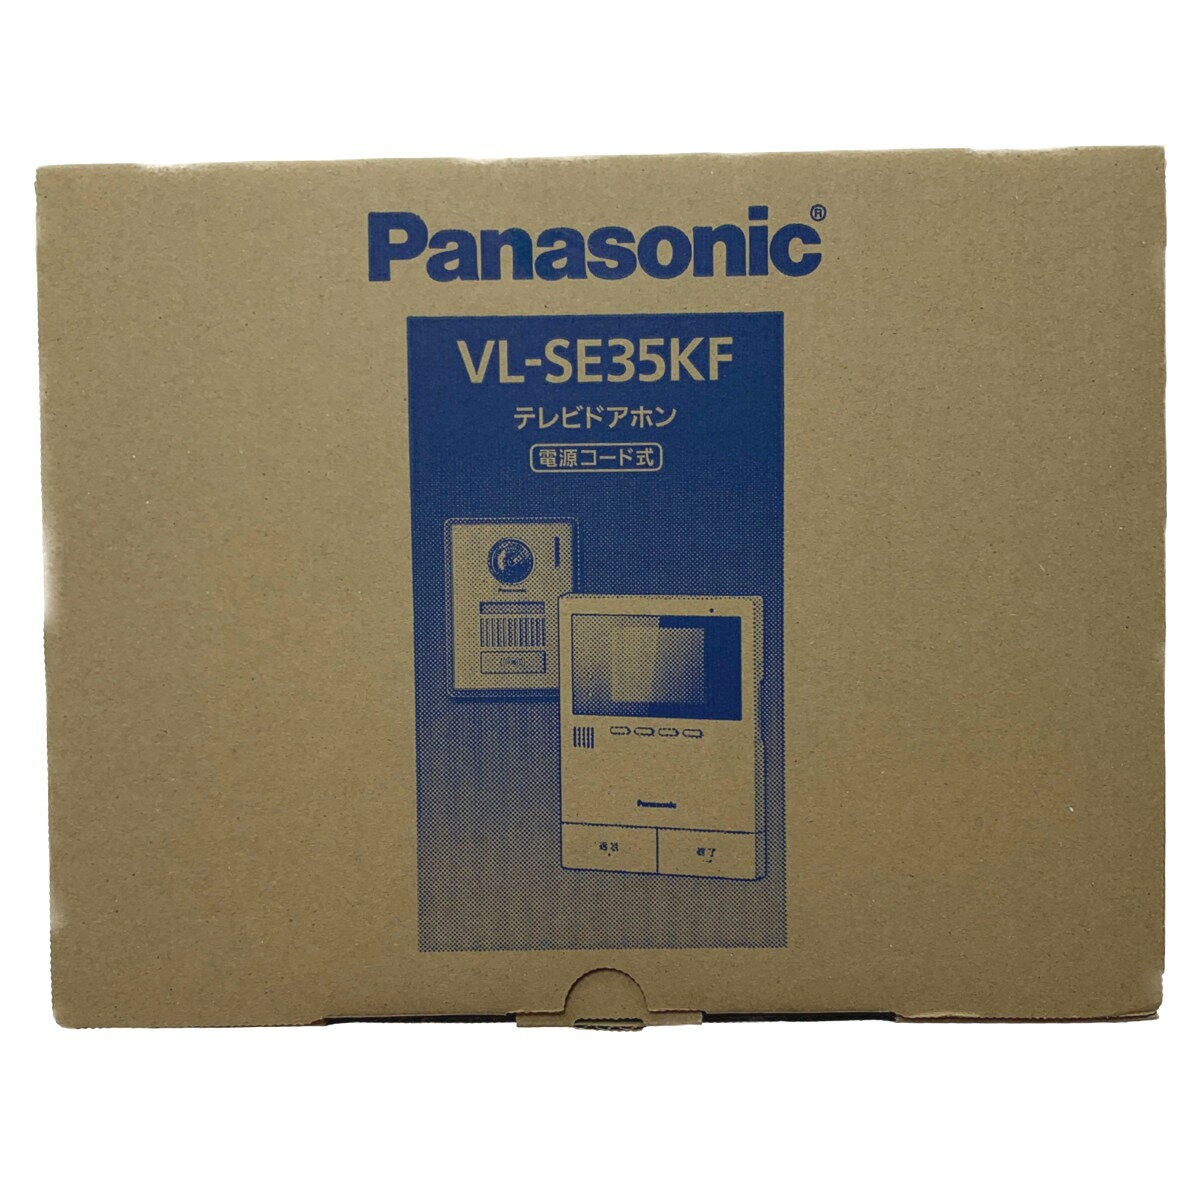 ▽▽【中古】Panasonic パナソニック テレビドアホン　電源コード式 VL-SE35KF 開封未使用品 Sランク